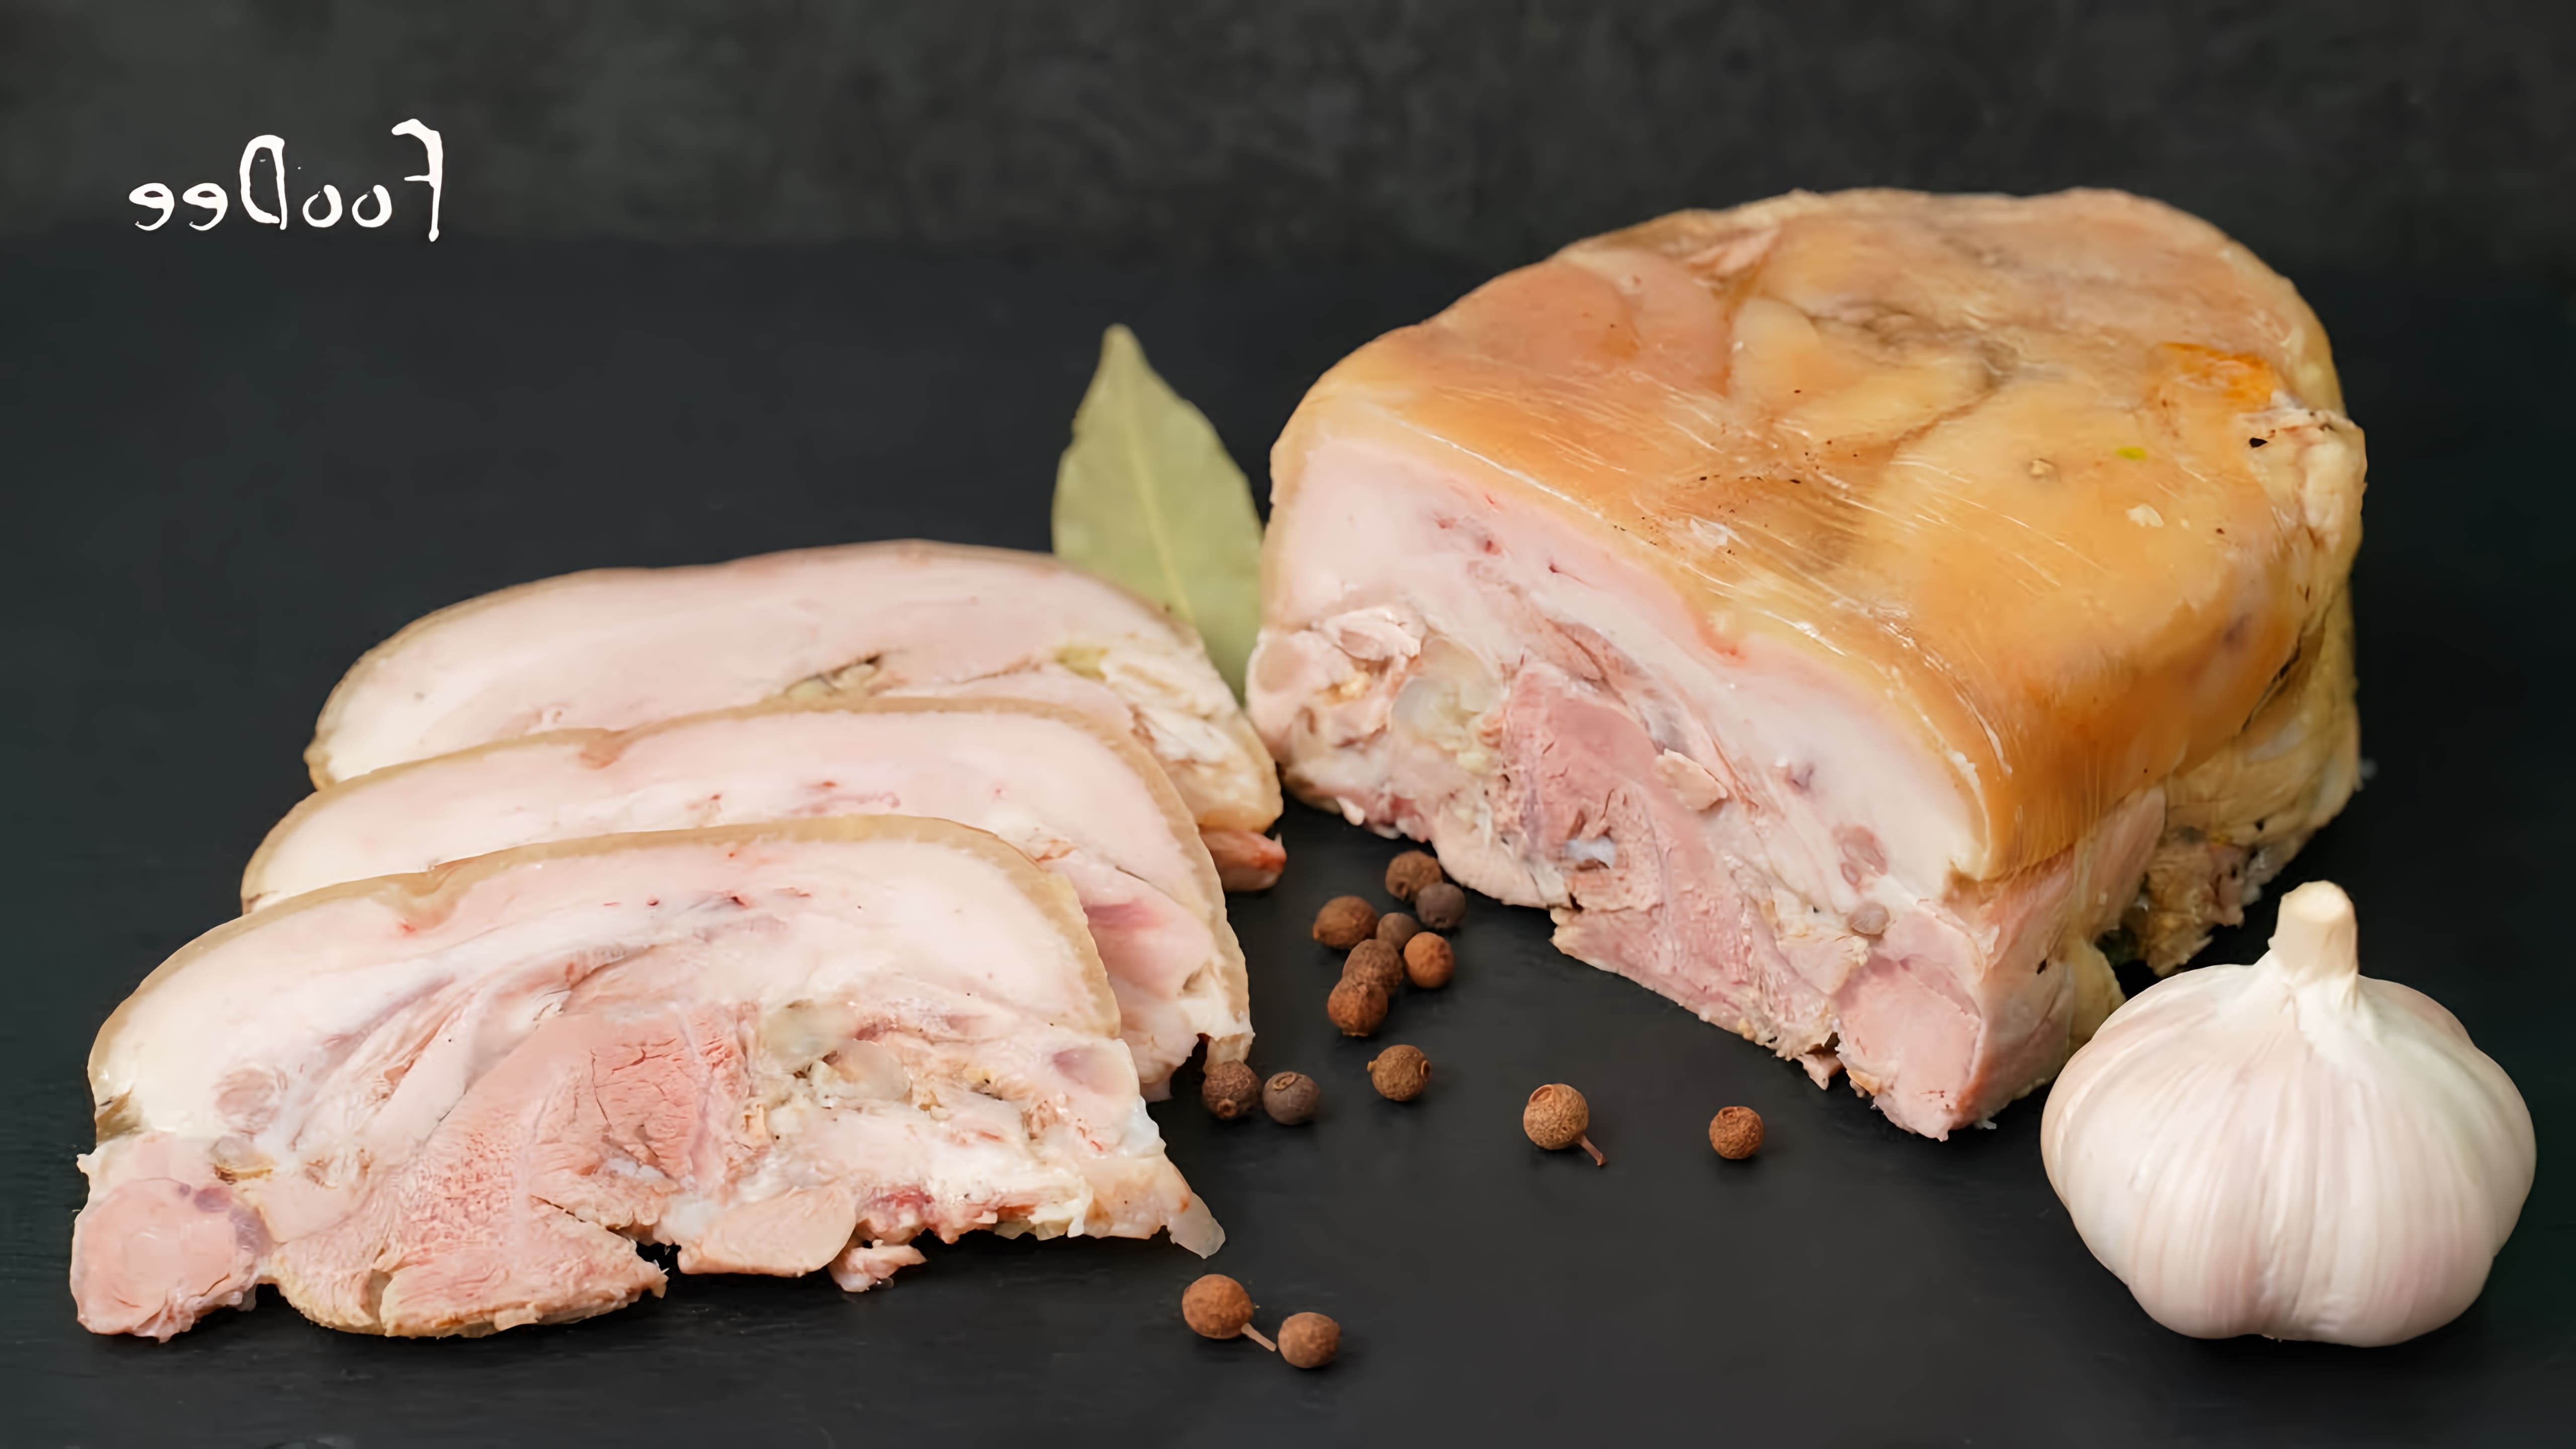 В этом видео демонстрируется процесс приготовления мясной закуски из свиной рульки